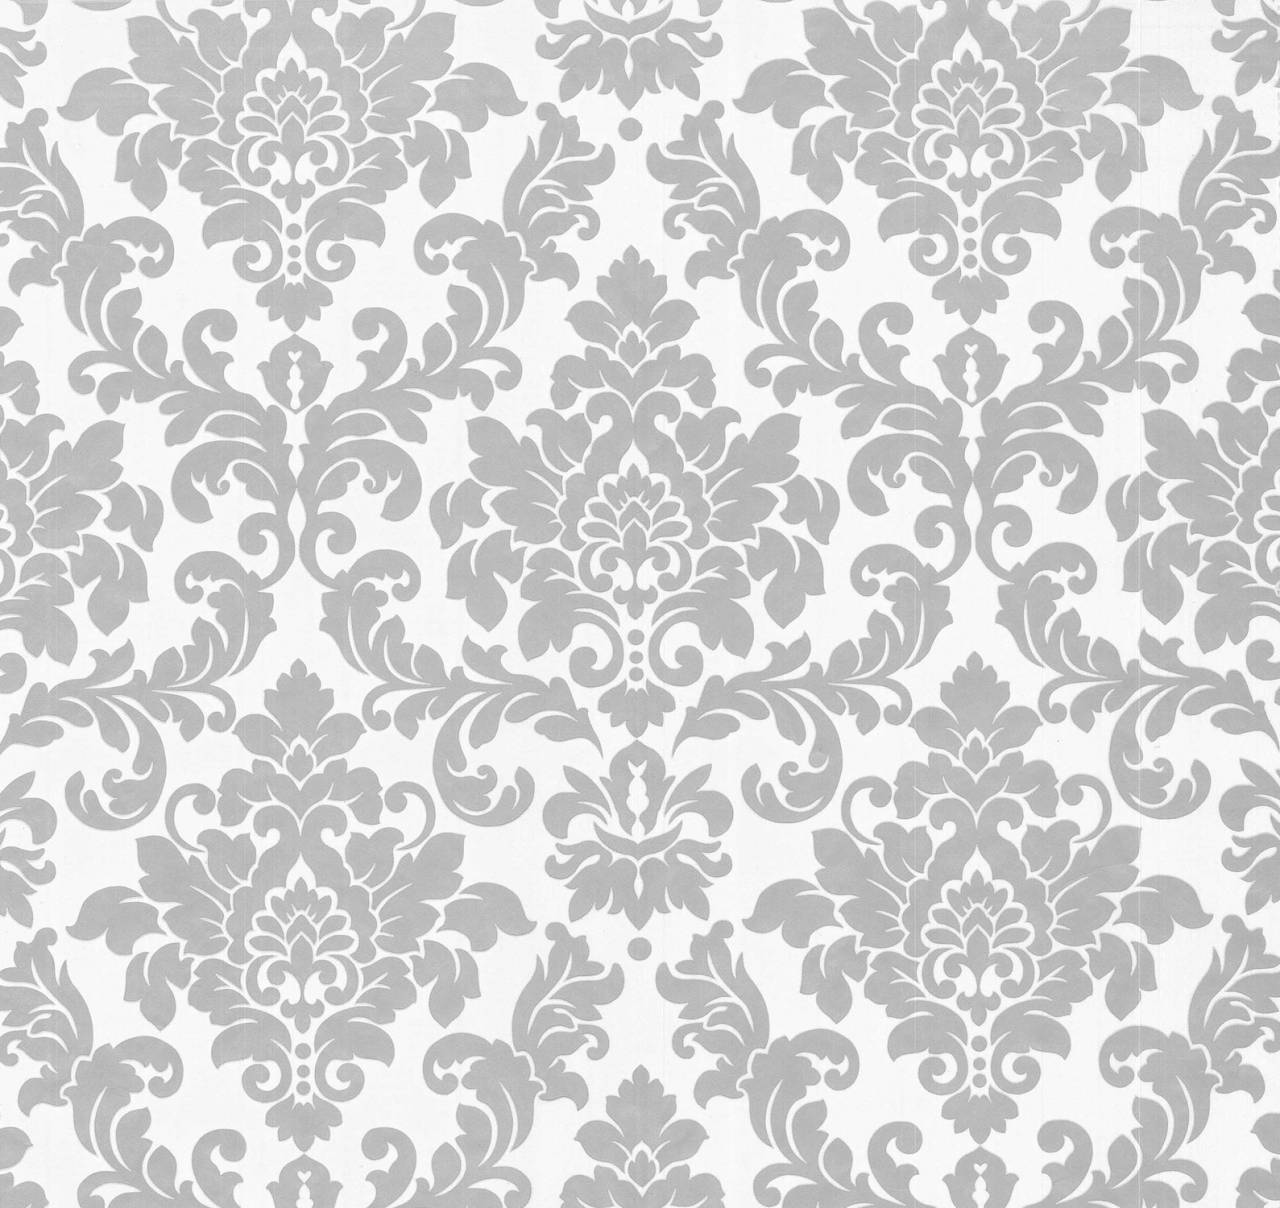 Thomas Non-Woven Wallpaper Baroque White/Silver Tlt001 - 360891